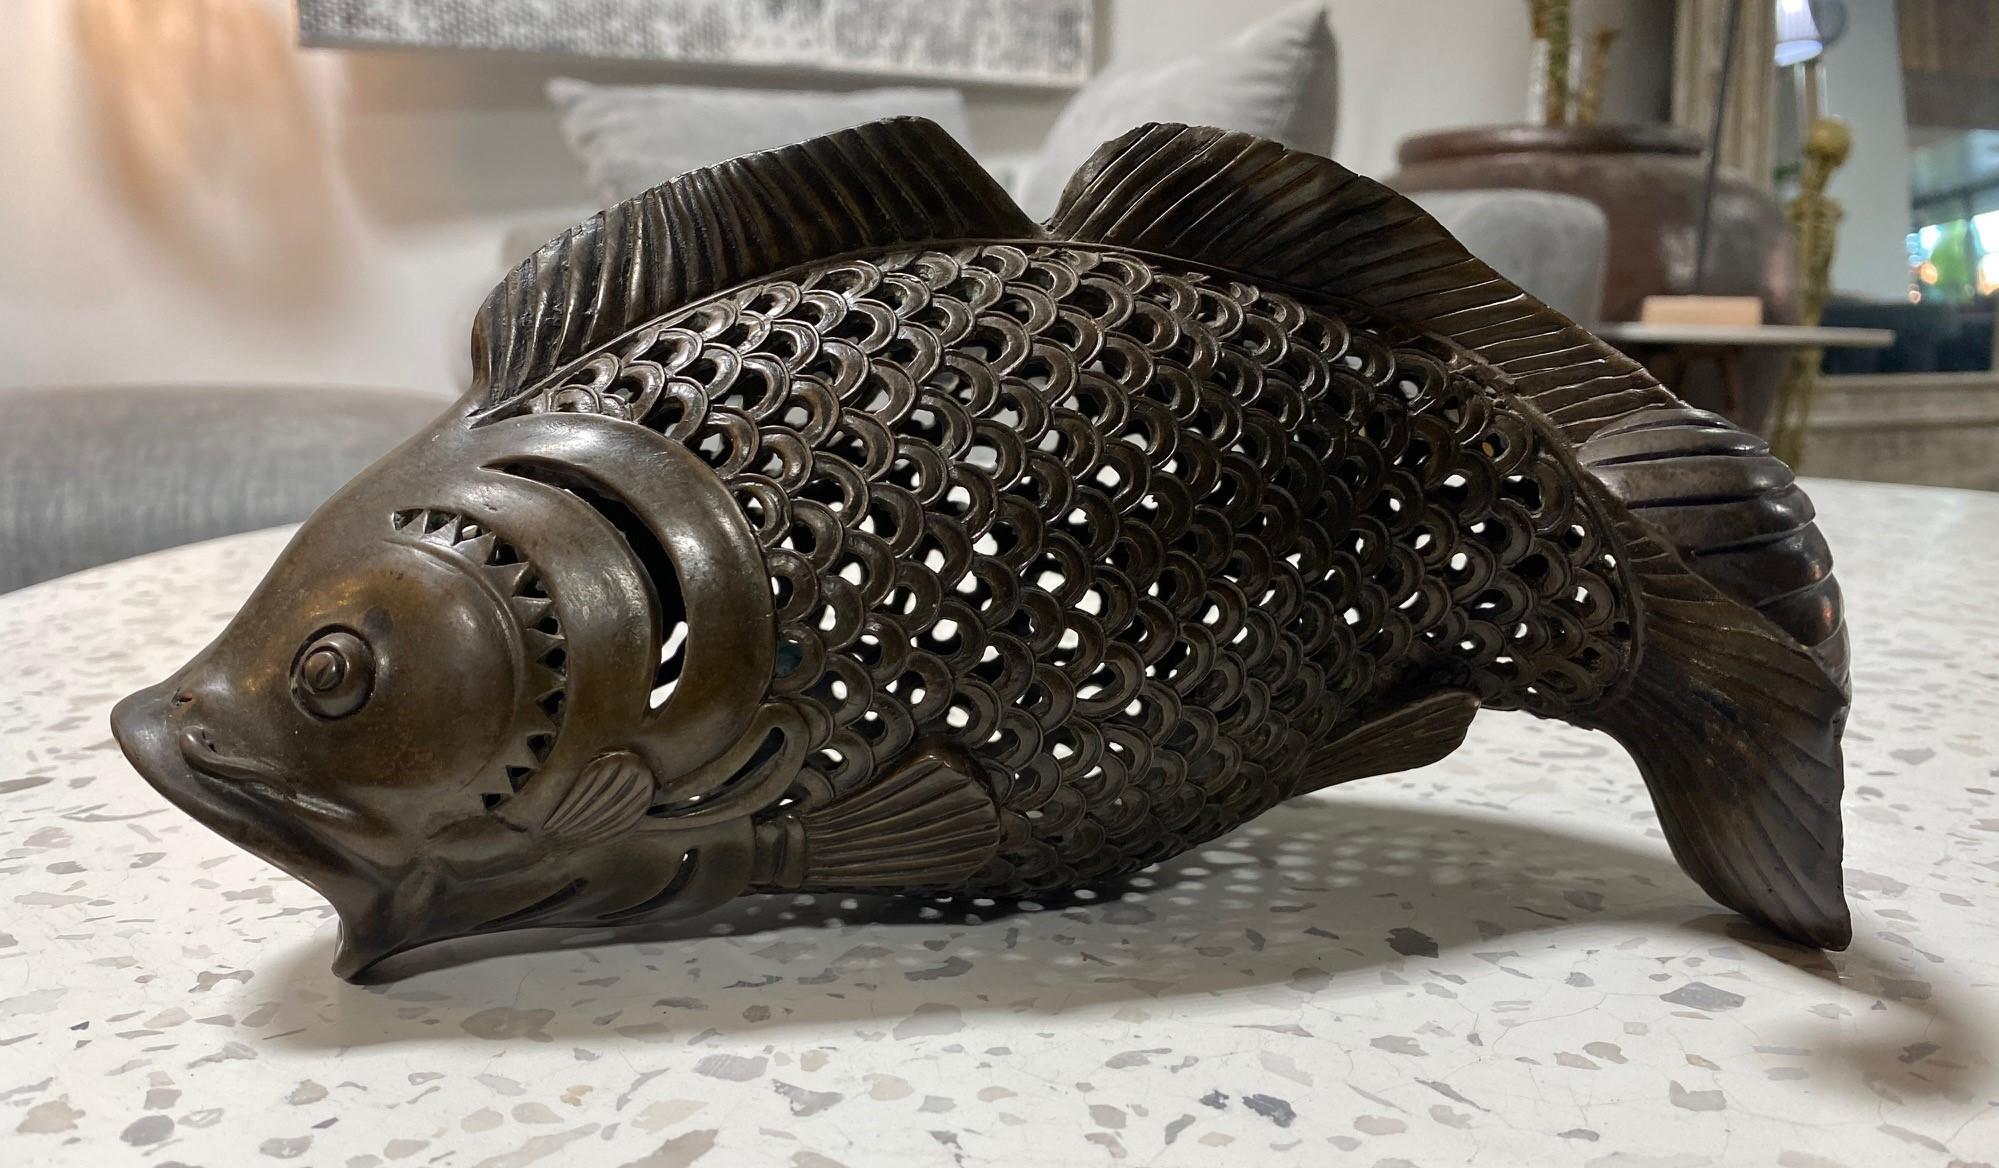 Magnifique sculpture japonaise en bronze représentant un poisson koï, avec un magnifique travail de maillage et une patine brillante. 

Cette pièce a peut-être été fabriquée à l'origine pour servir de brûleur d'encens ou d'objet décoratif à